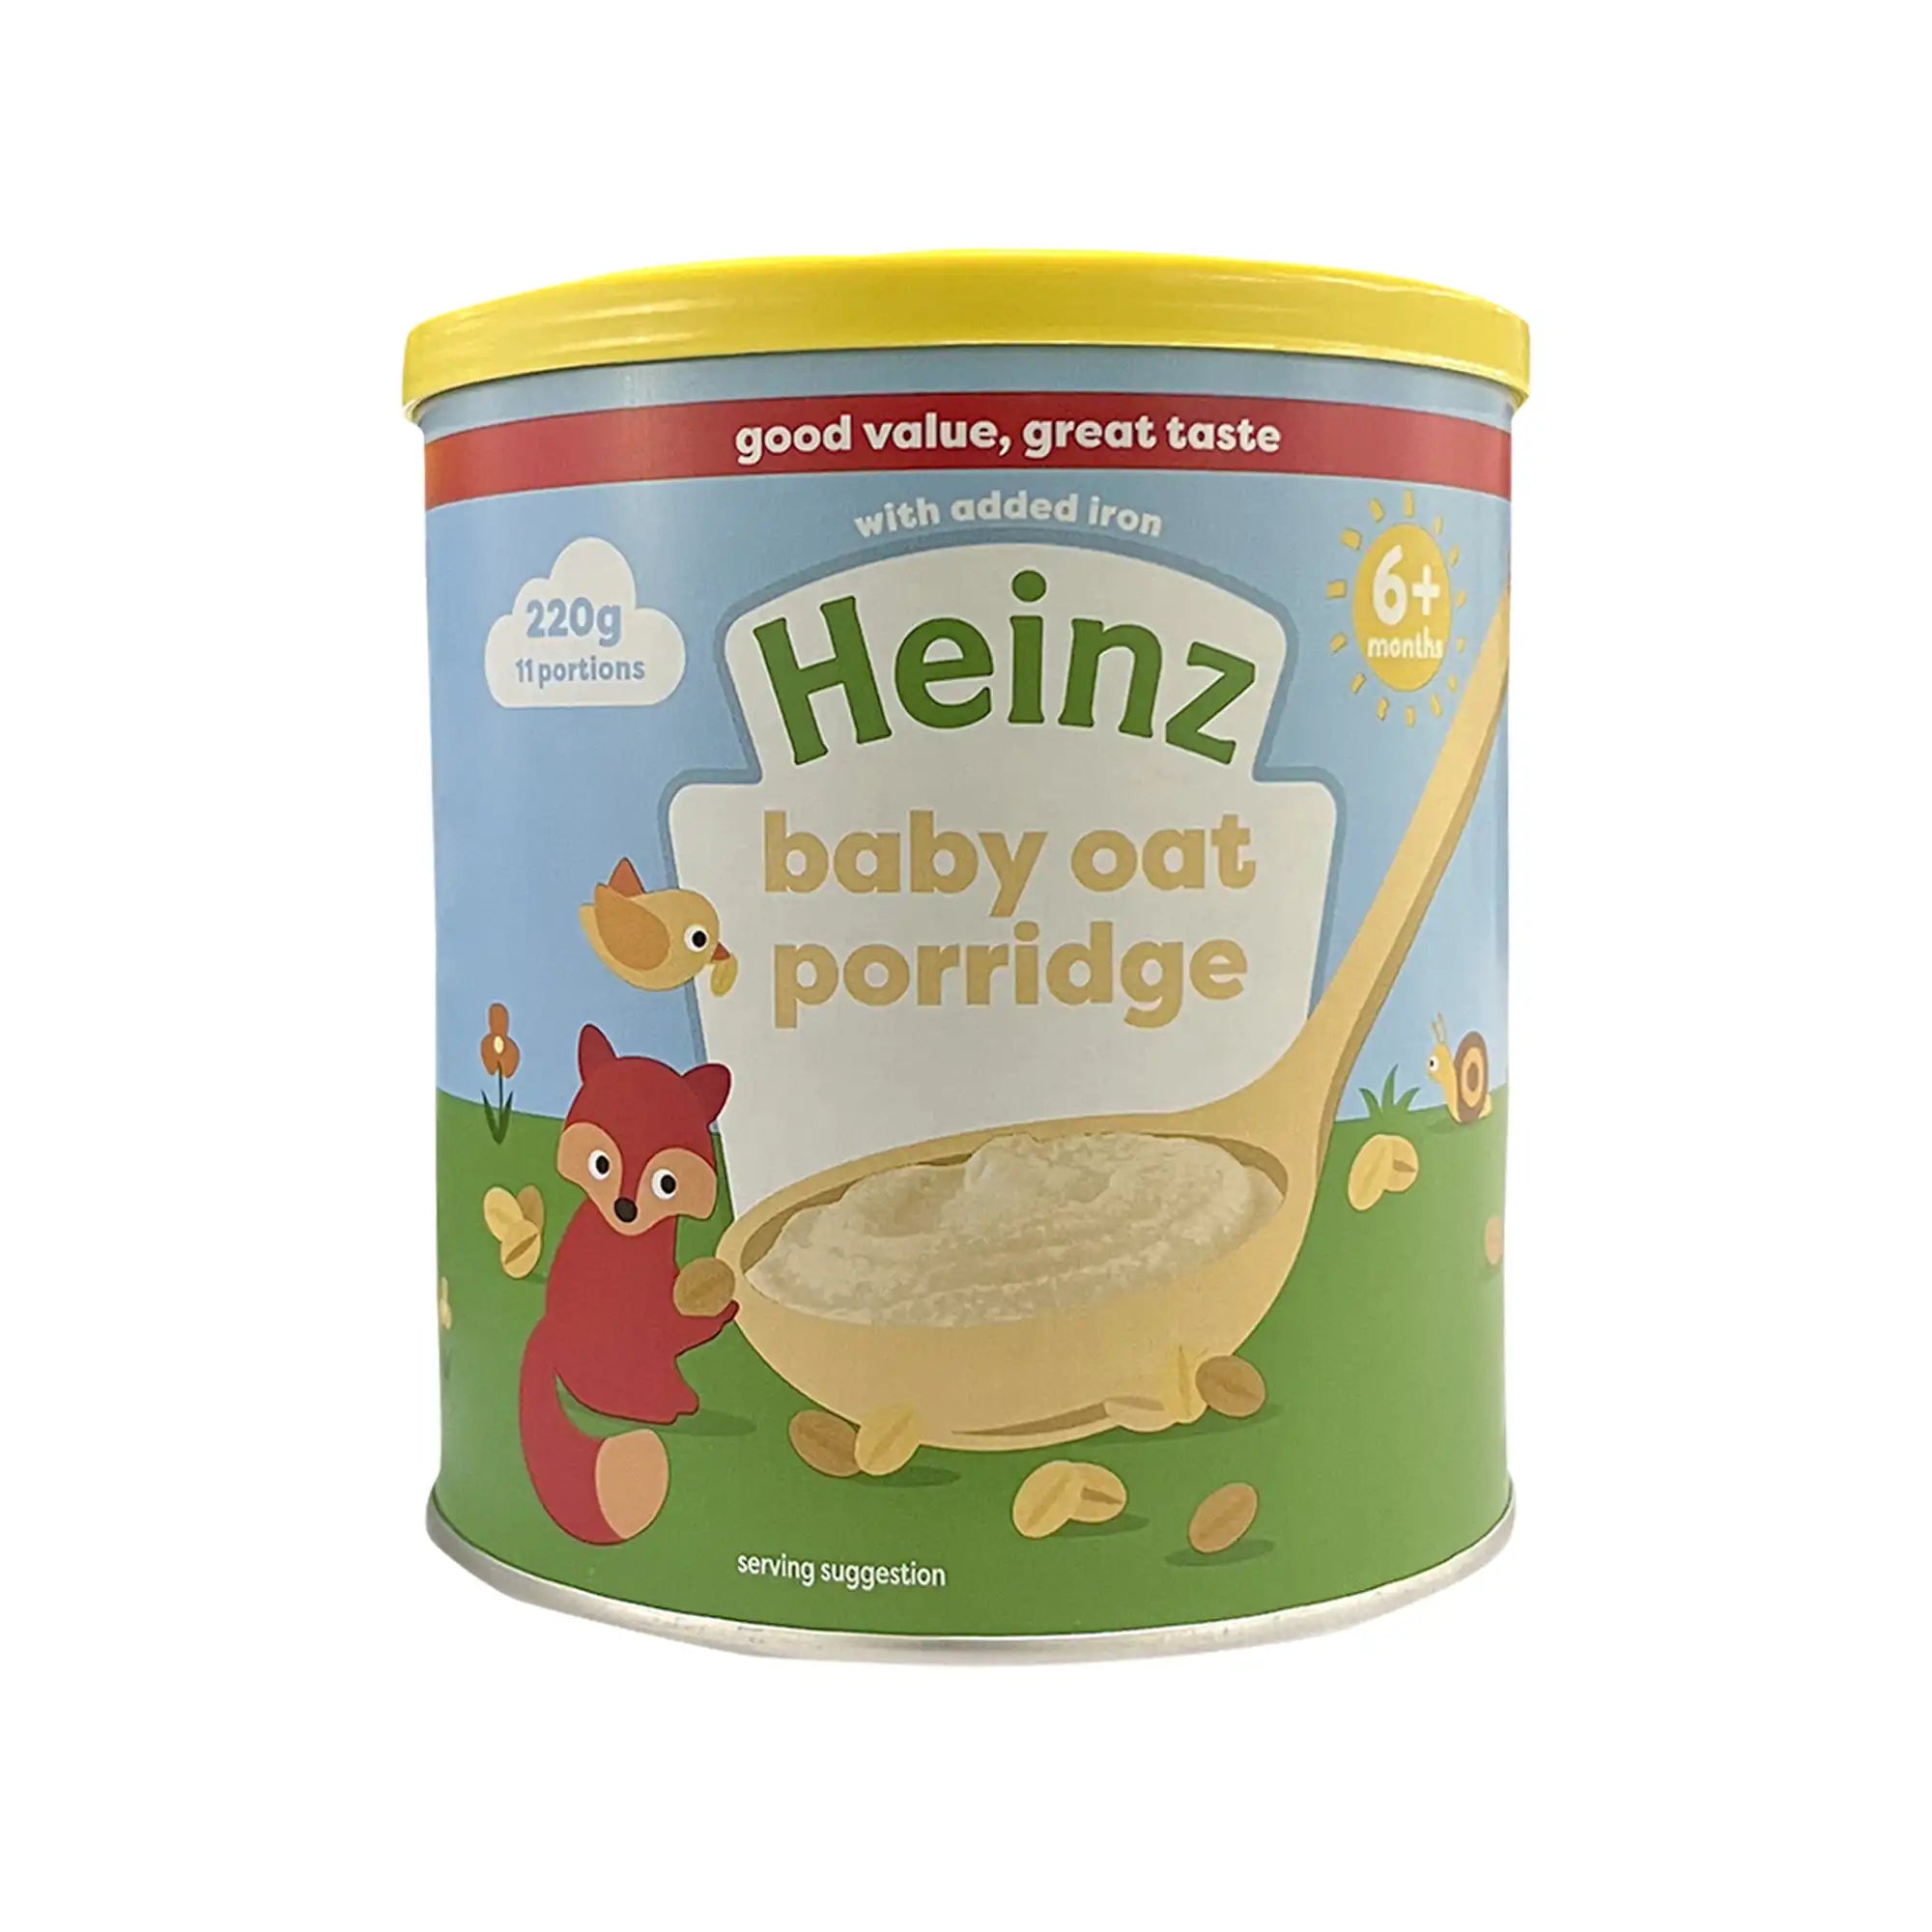 Heinz Baby Oat Porridge for Babies - 220gms, 6+months